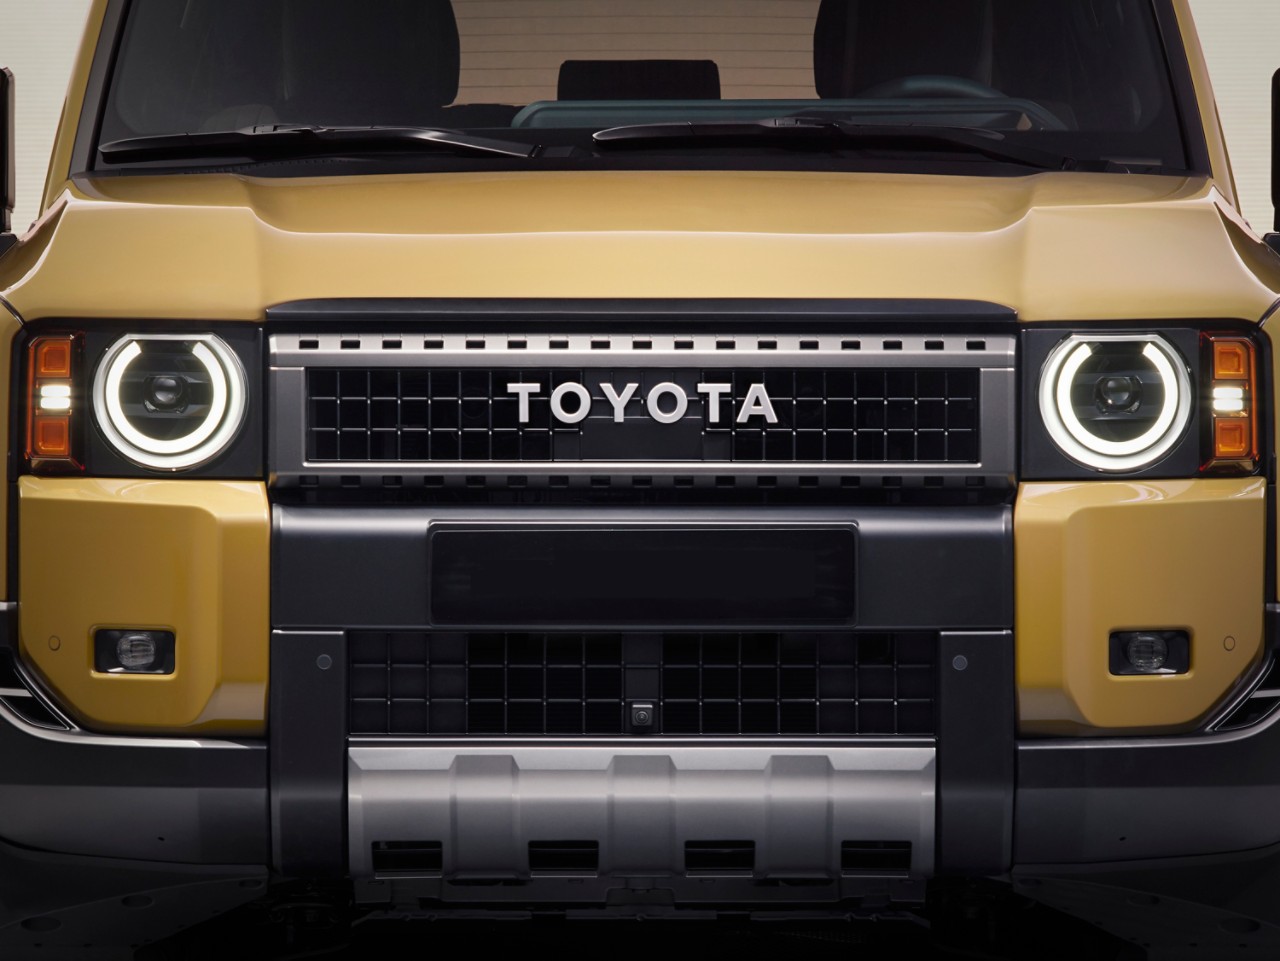 Toyota mest populære bilmærke i januar